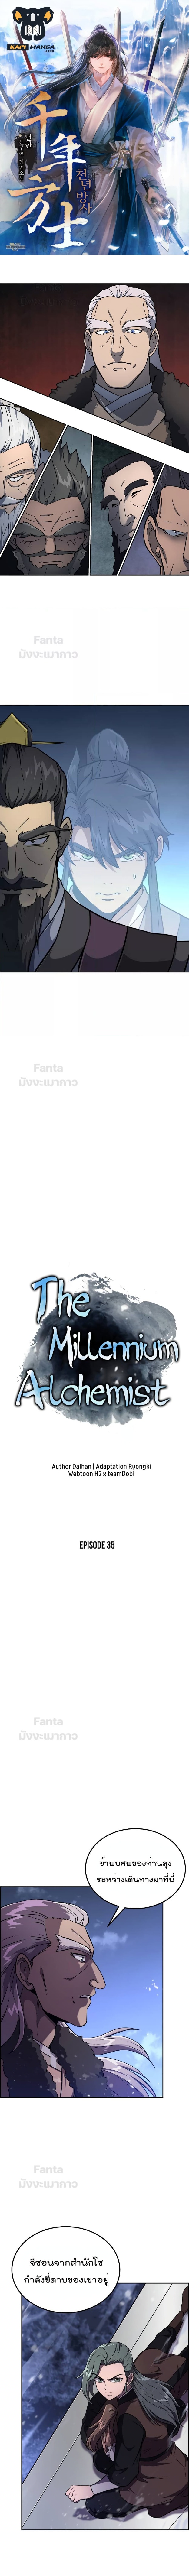 Millennium Spinning 35 (1)